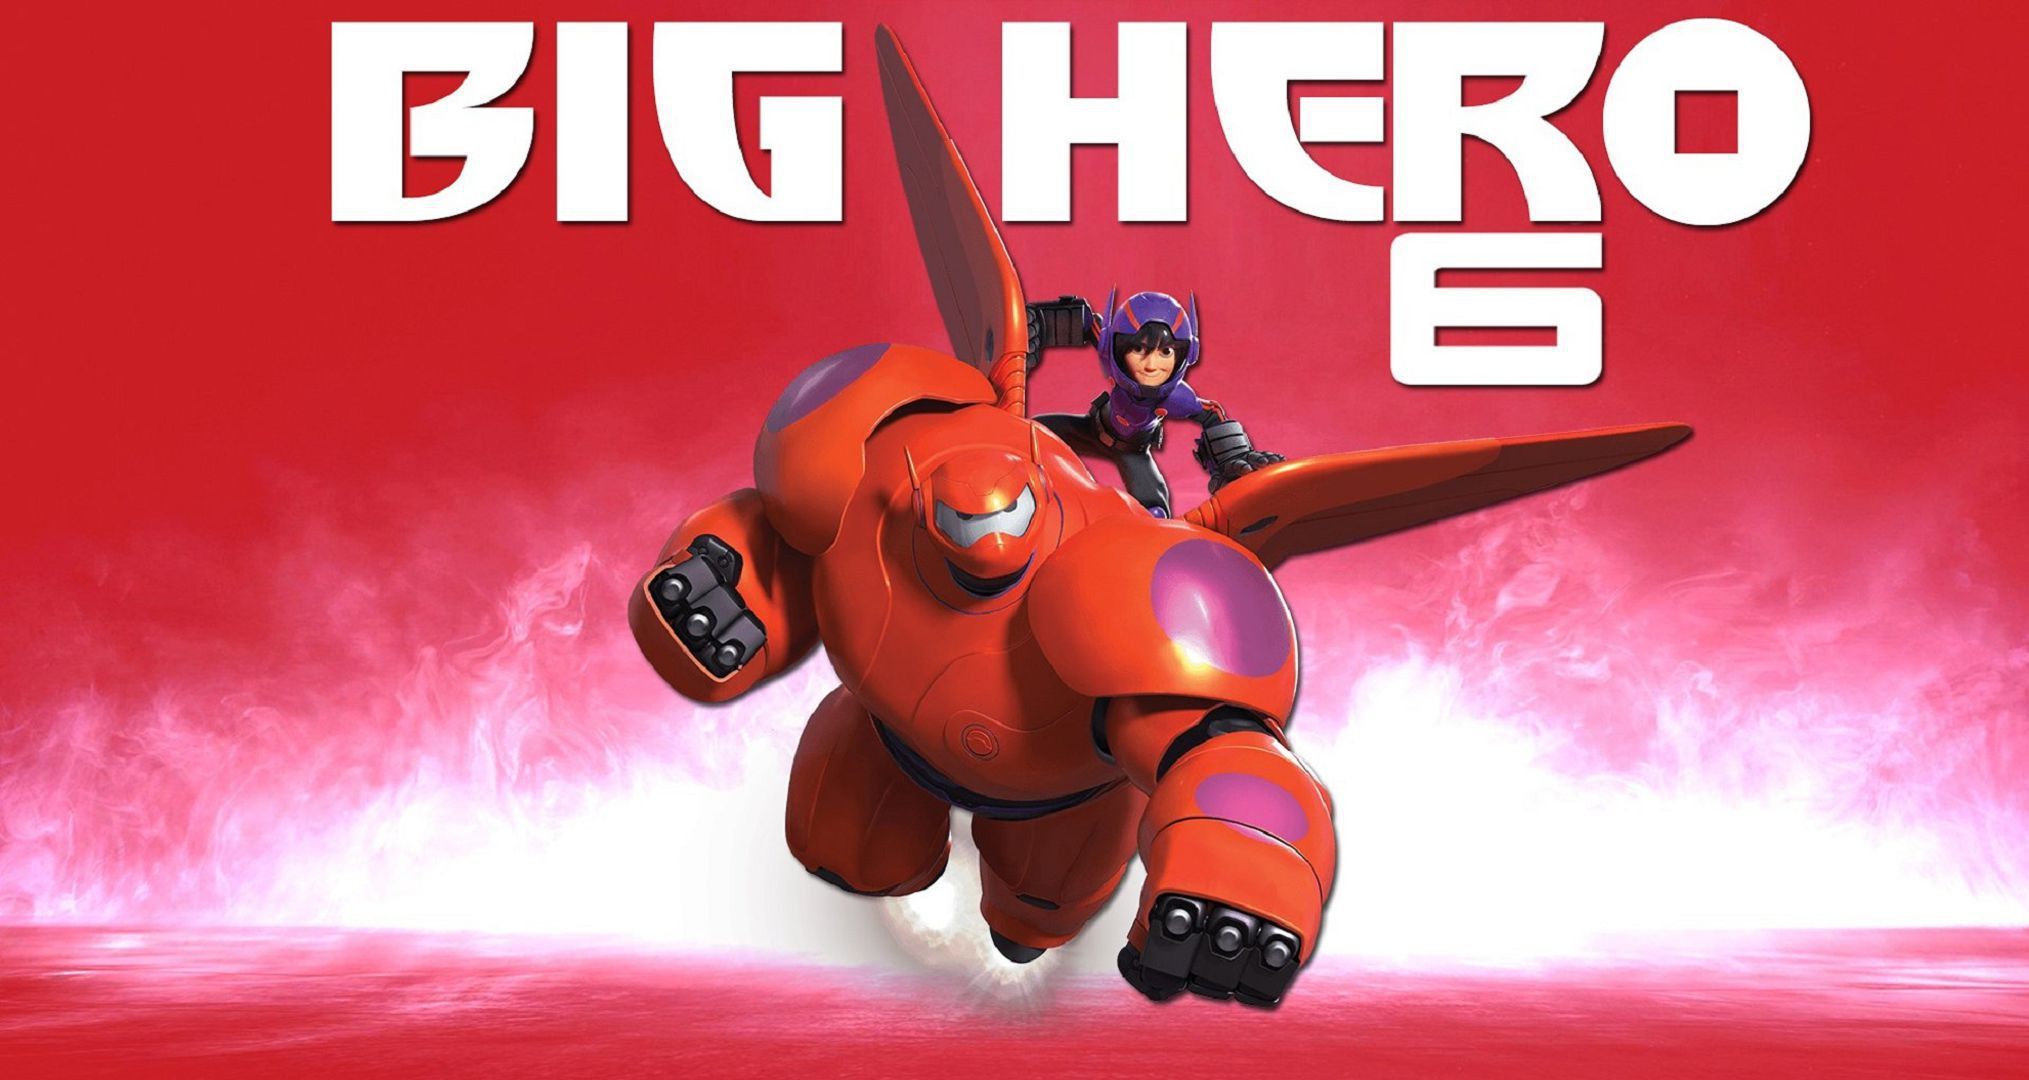 Big Hero 6 Wallpapers